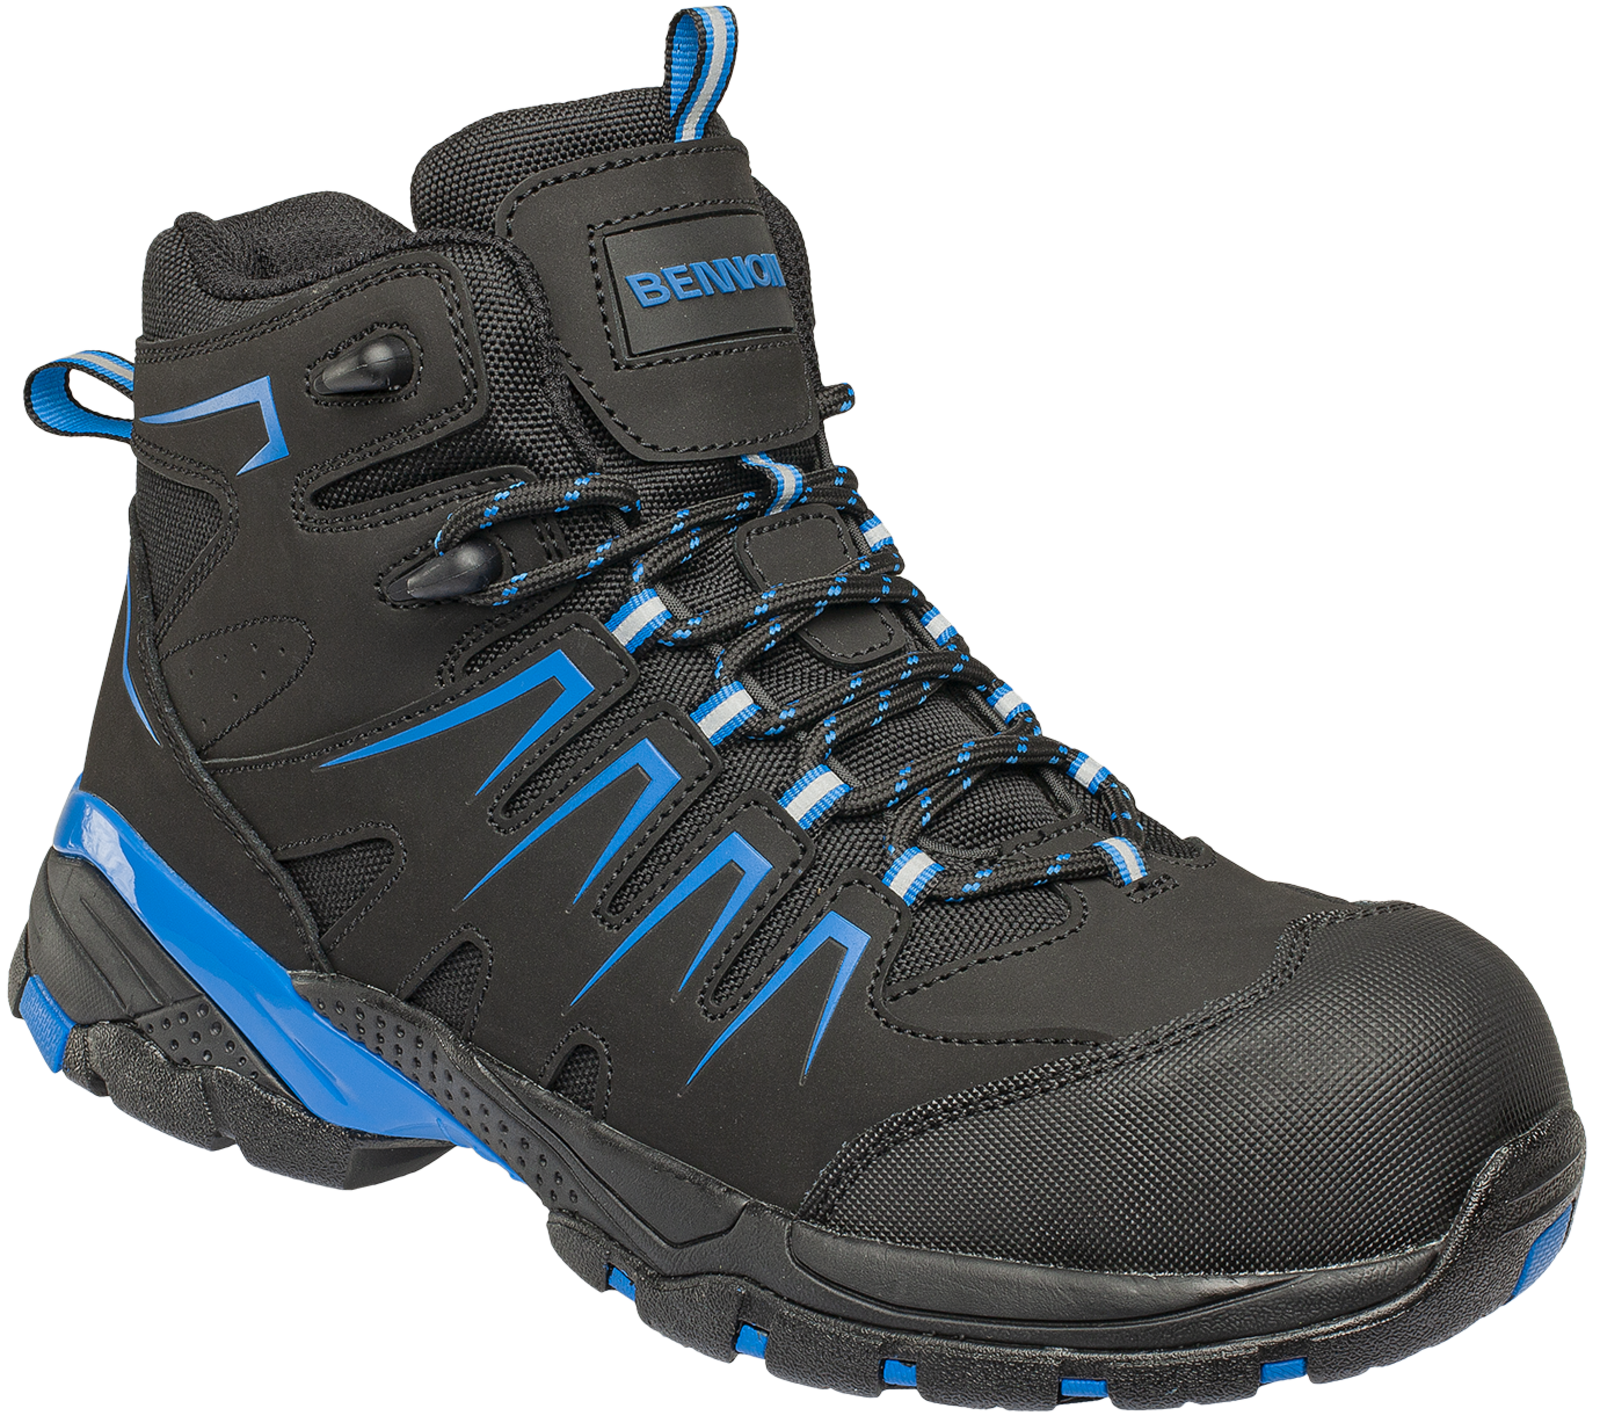 Bezpečnostná členková obuv Bennon Orlando XTR S3 NM High - veľkosť: 41, farba: čierna/modrá